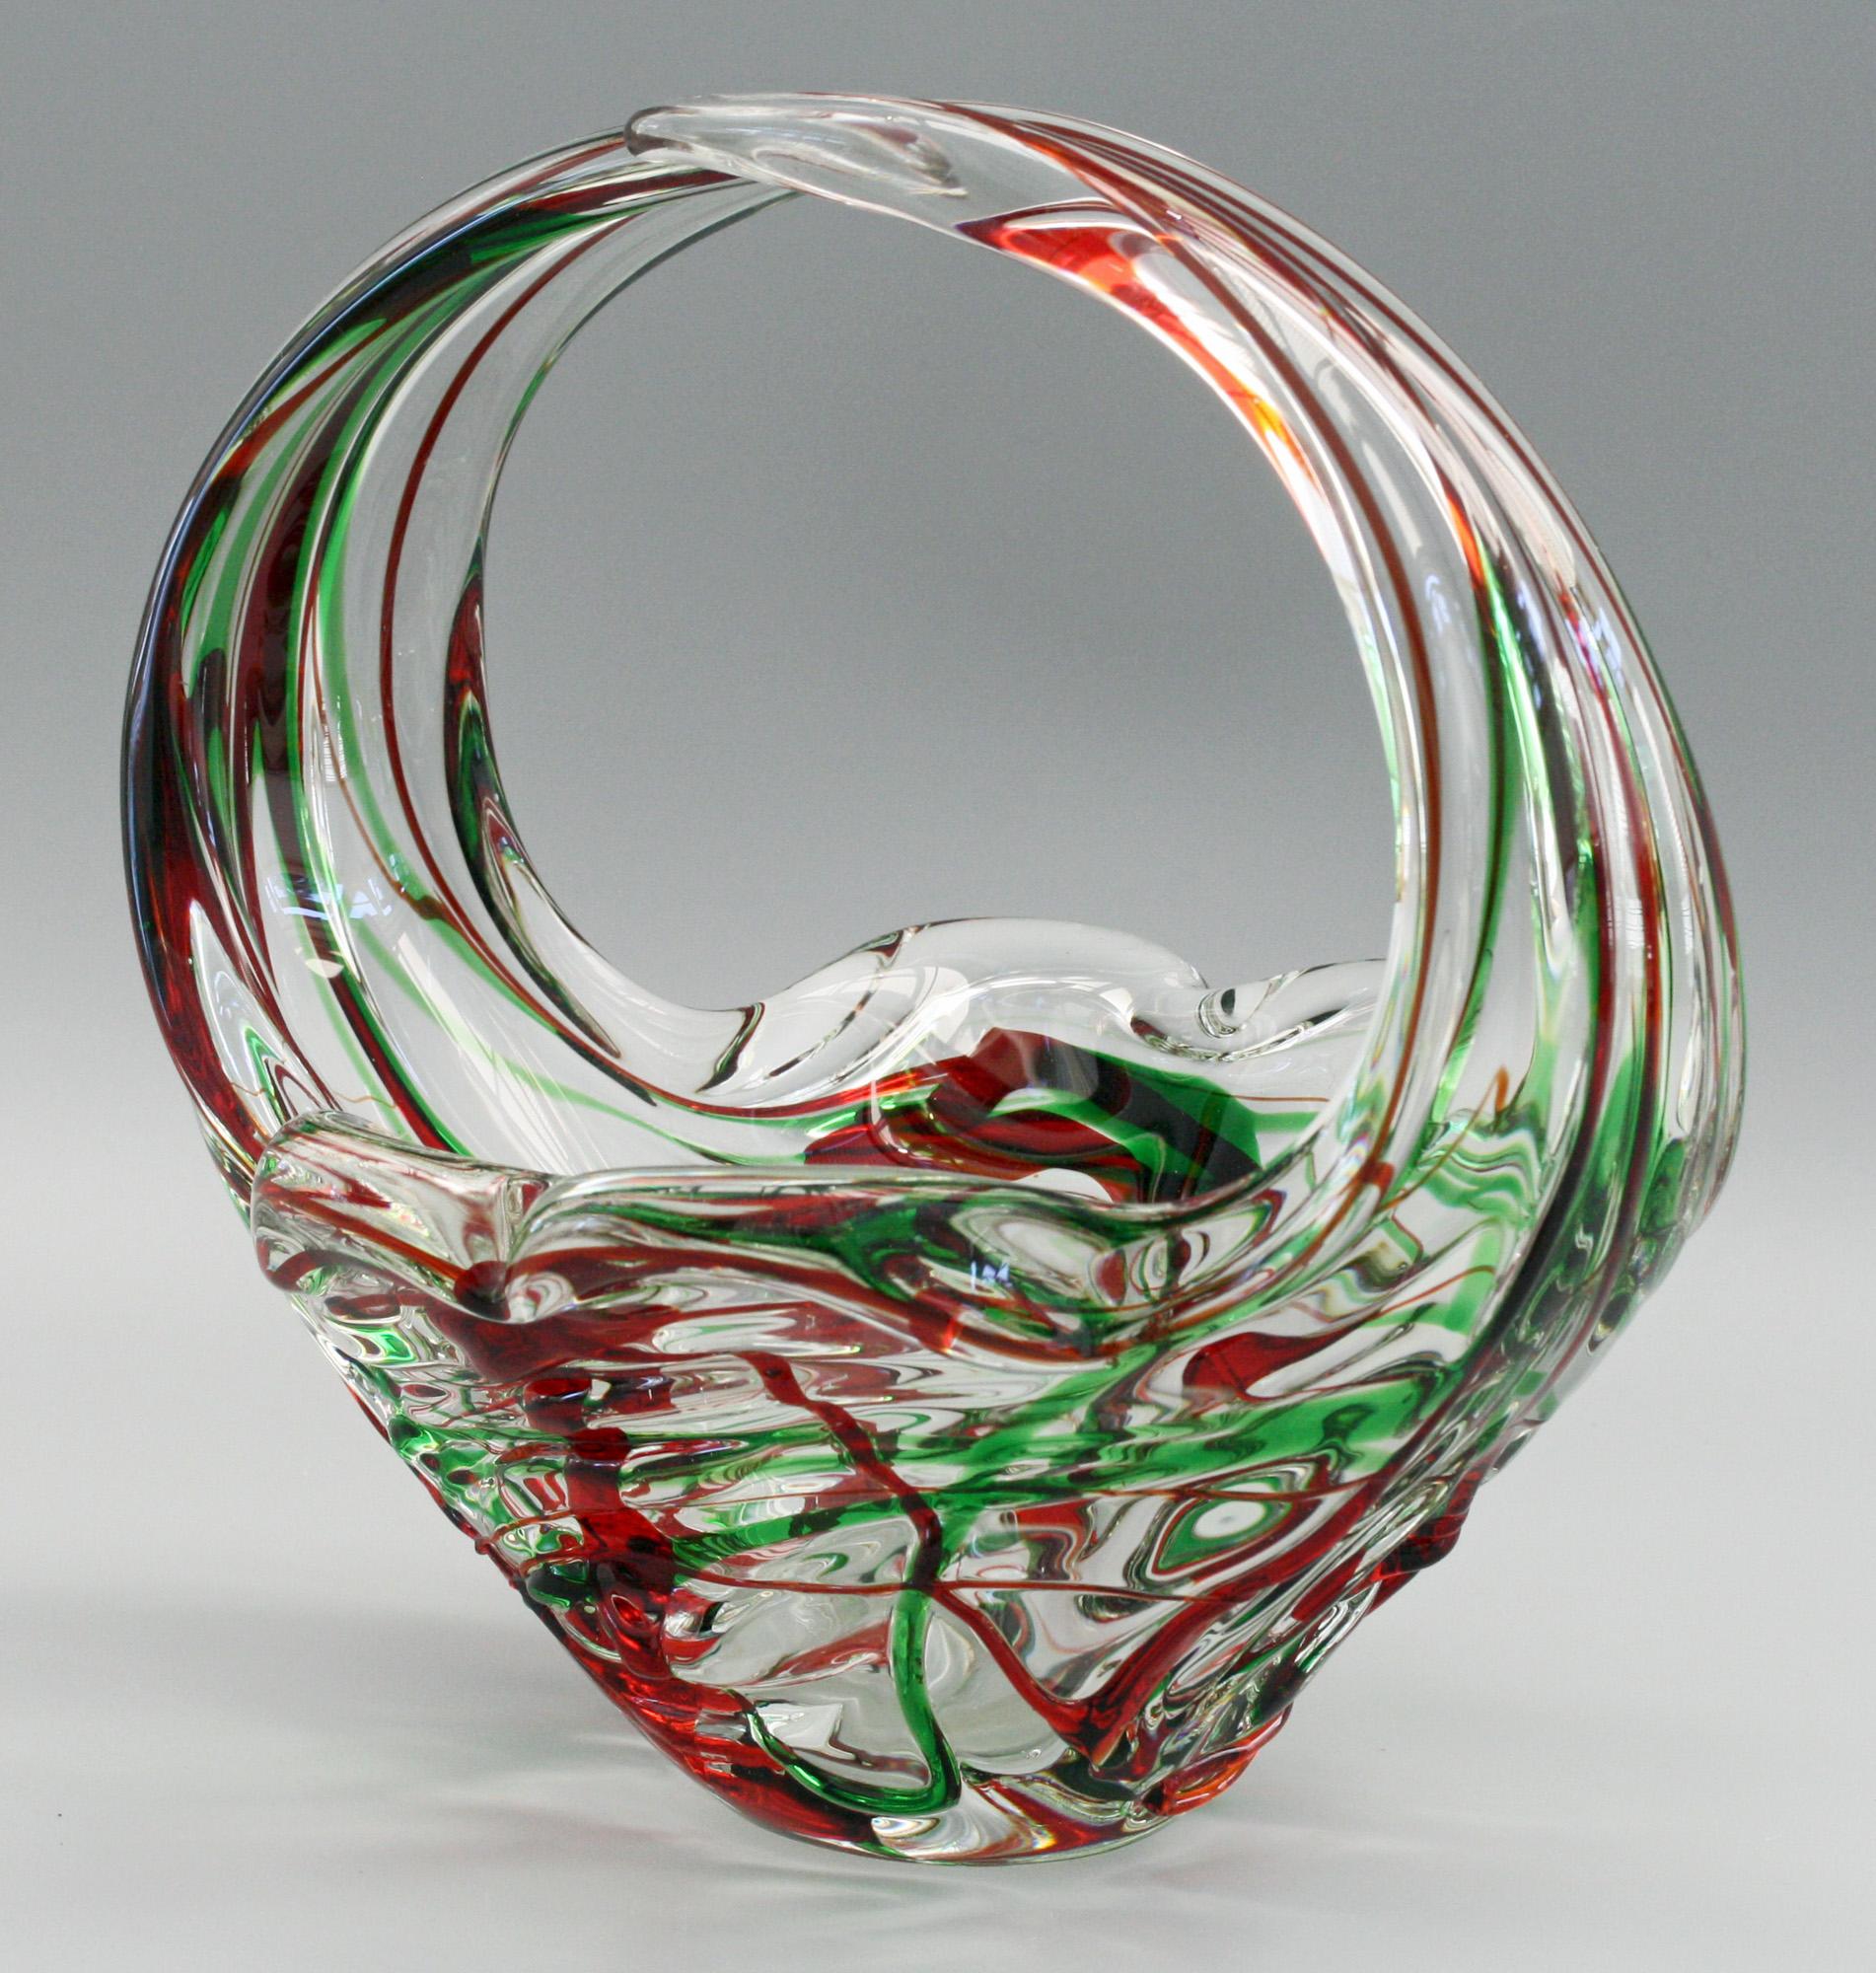 Un bol en forme de panier en verre d'art italien de Murano très frappant et élégant avec des traînées rouges et vertes datant du milieu du 20e siècle. Le bol est fortement moulé en verre transparent, avec une base en forme de fleur et deux poignées